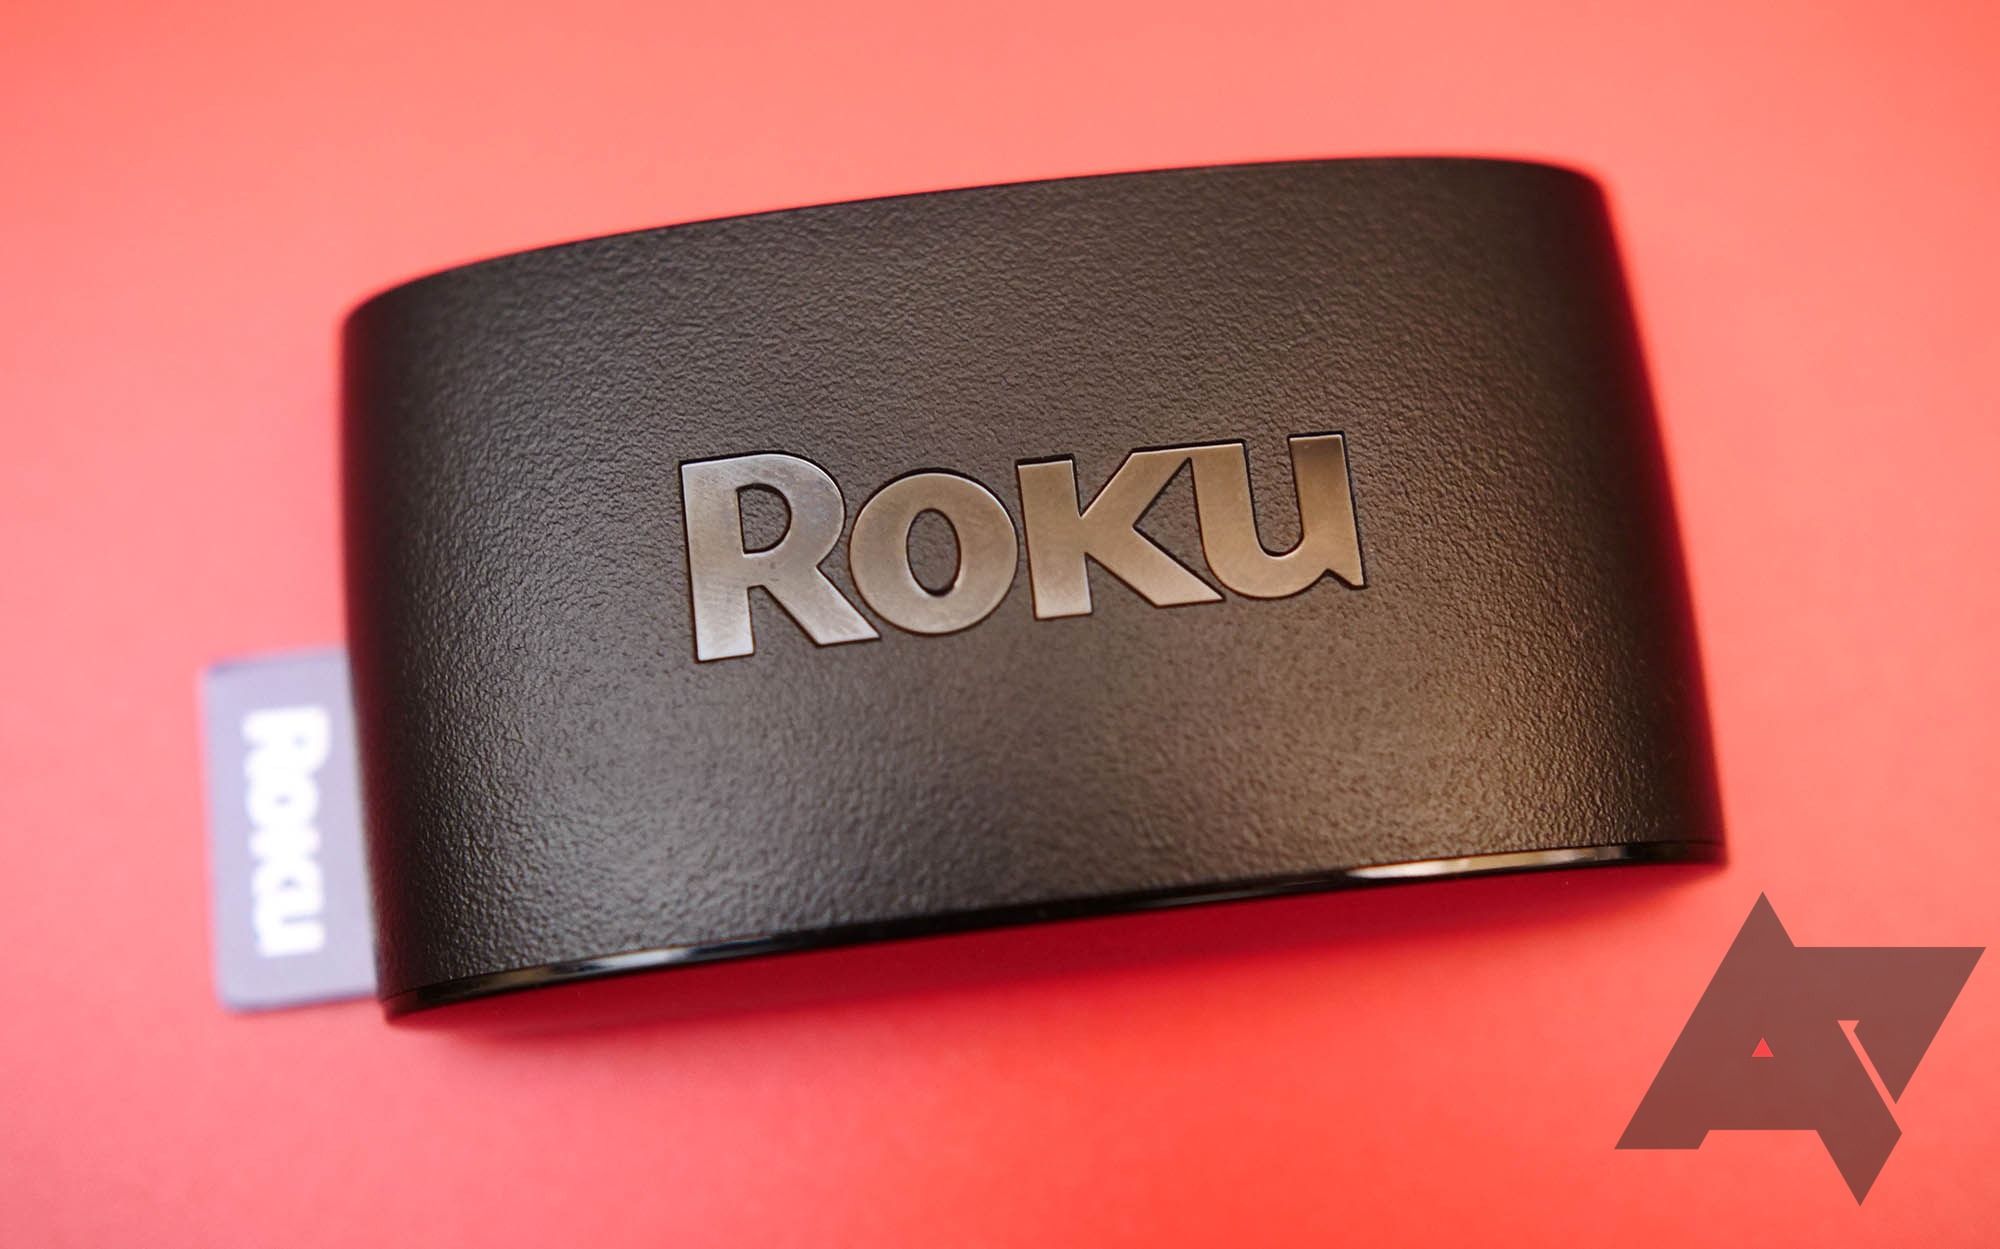 Perangkat Roku hitam dengan latar belakang merah dengan logo Android Police di kanan bawah